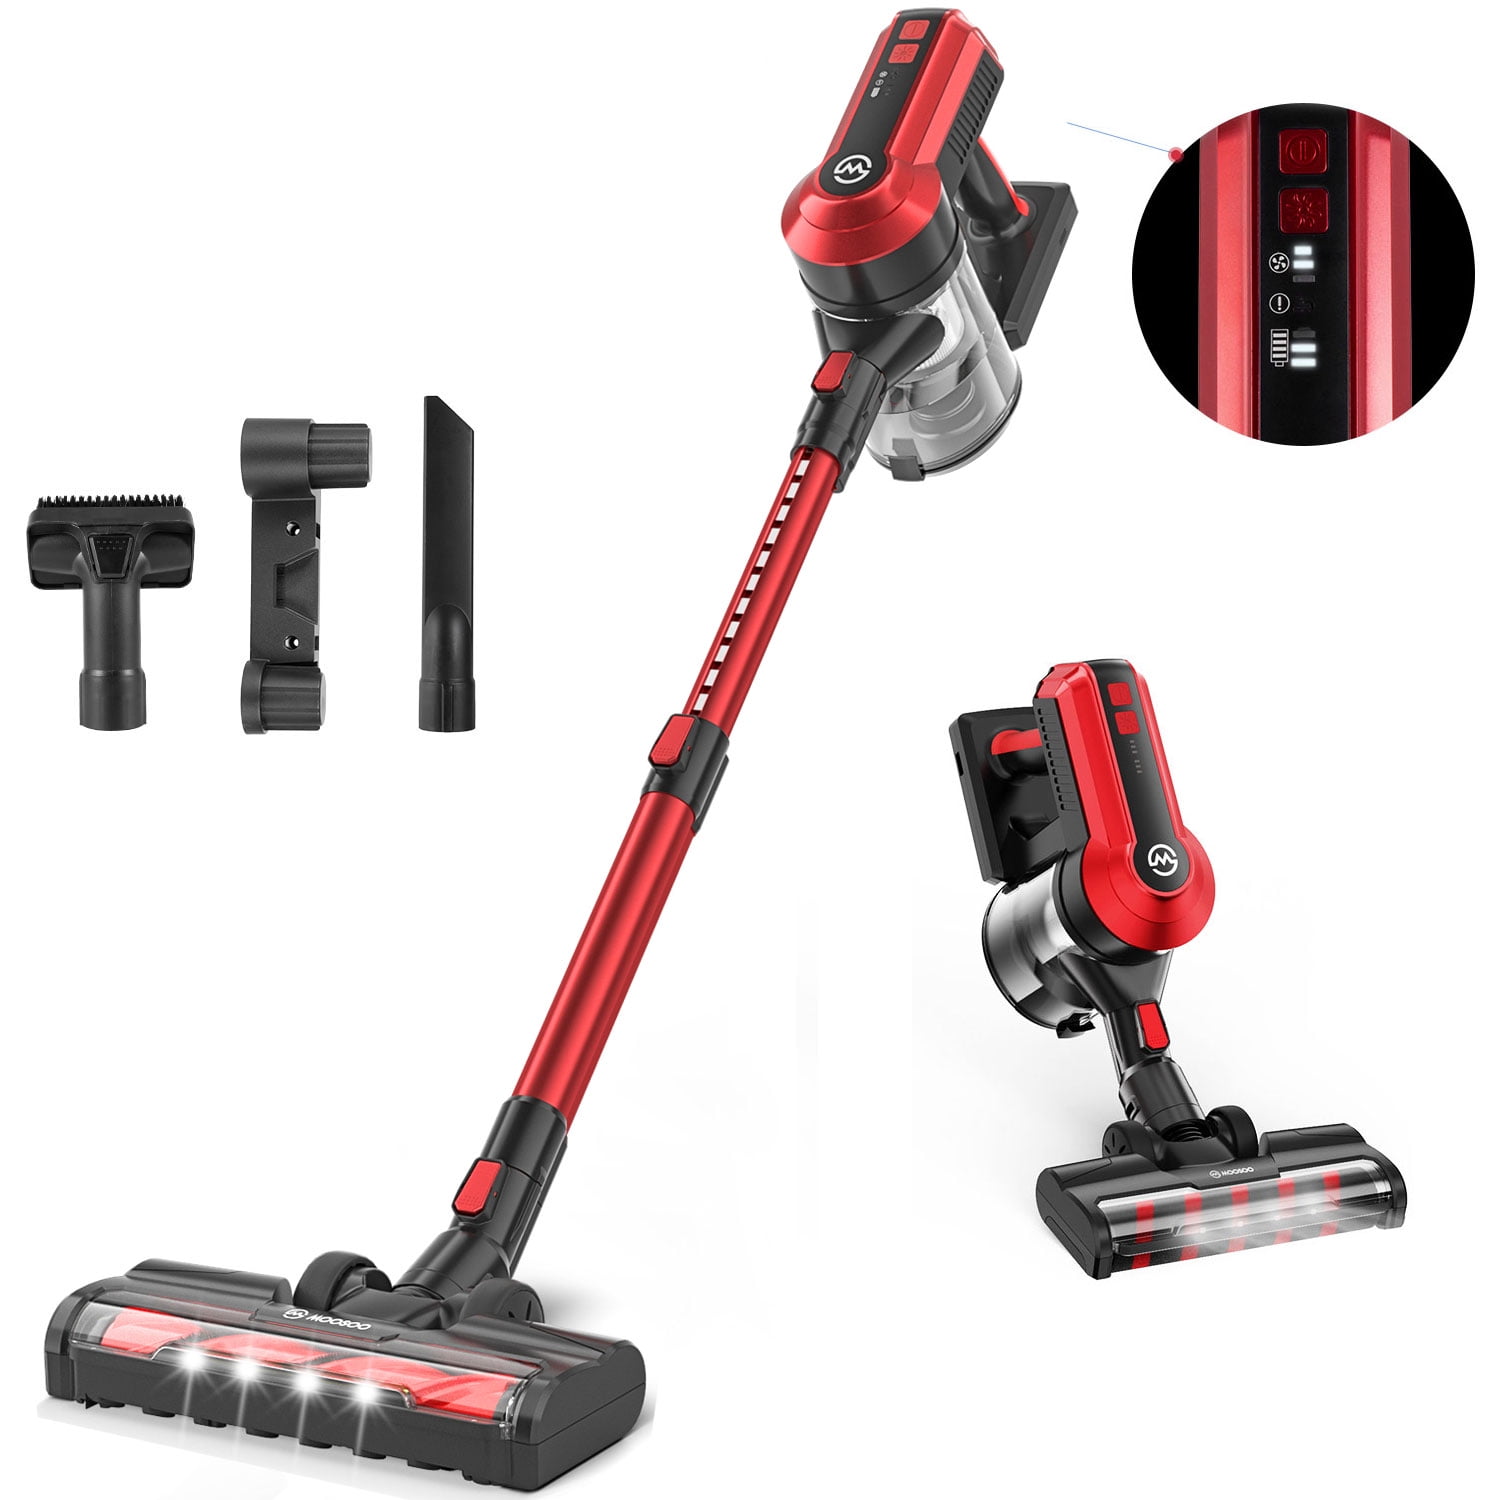 Moosoo Lightweight Cordless Vacuum, Cordless Vacuum For Hardwood Floors